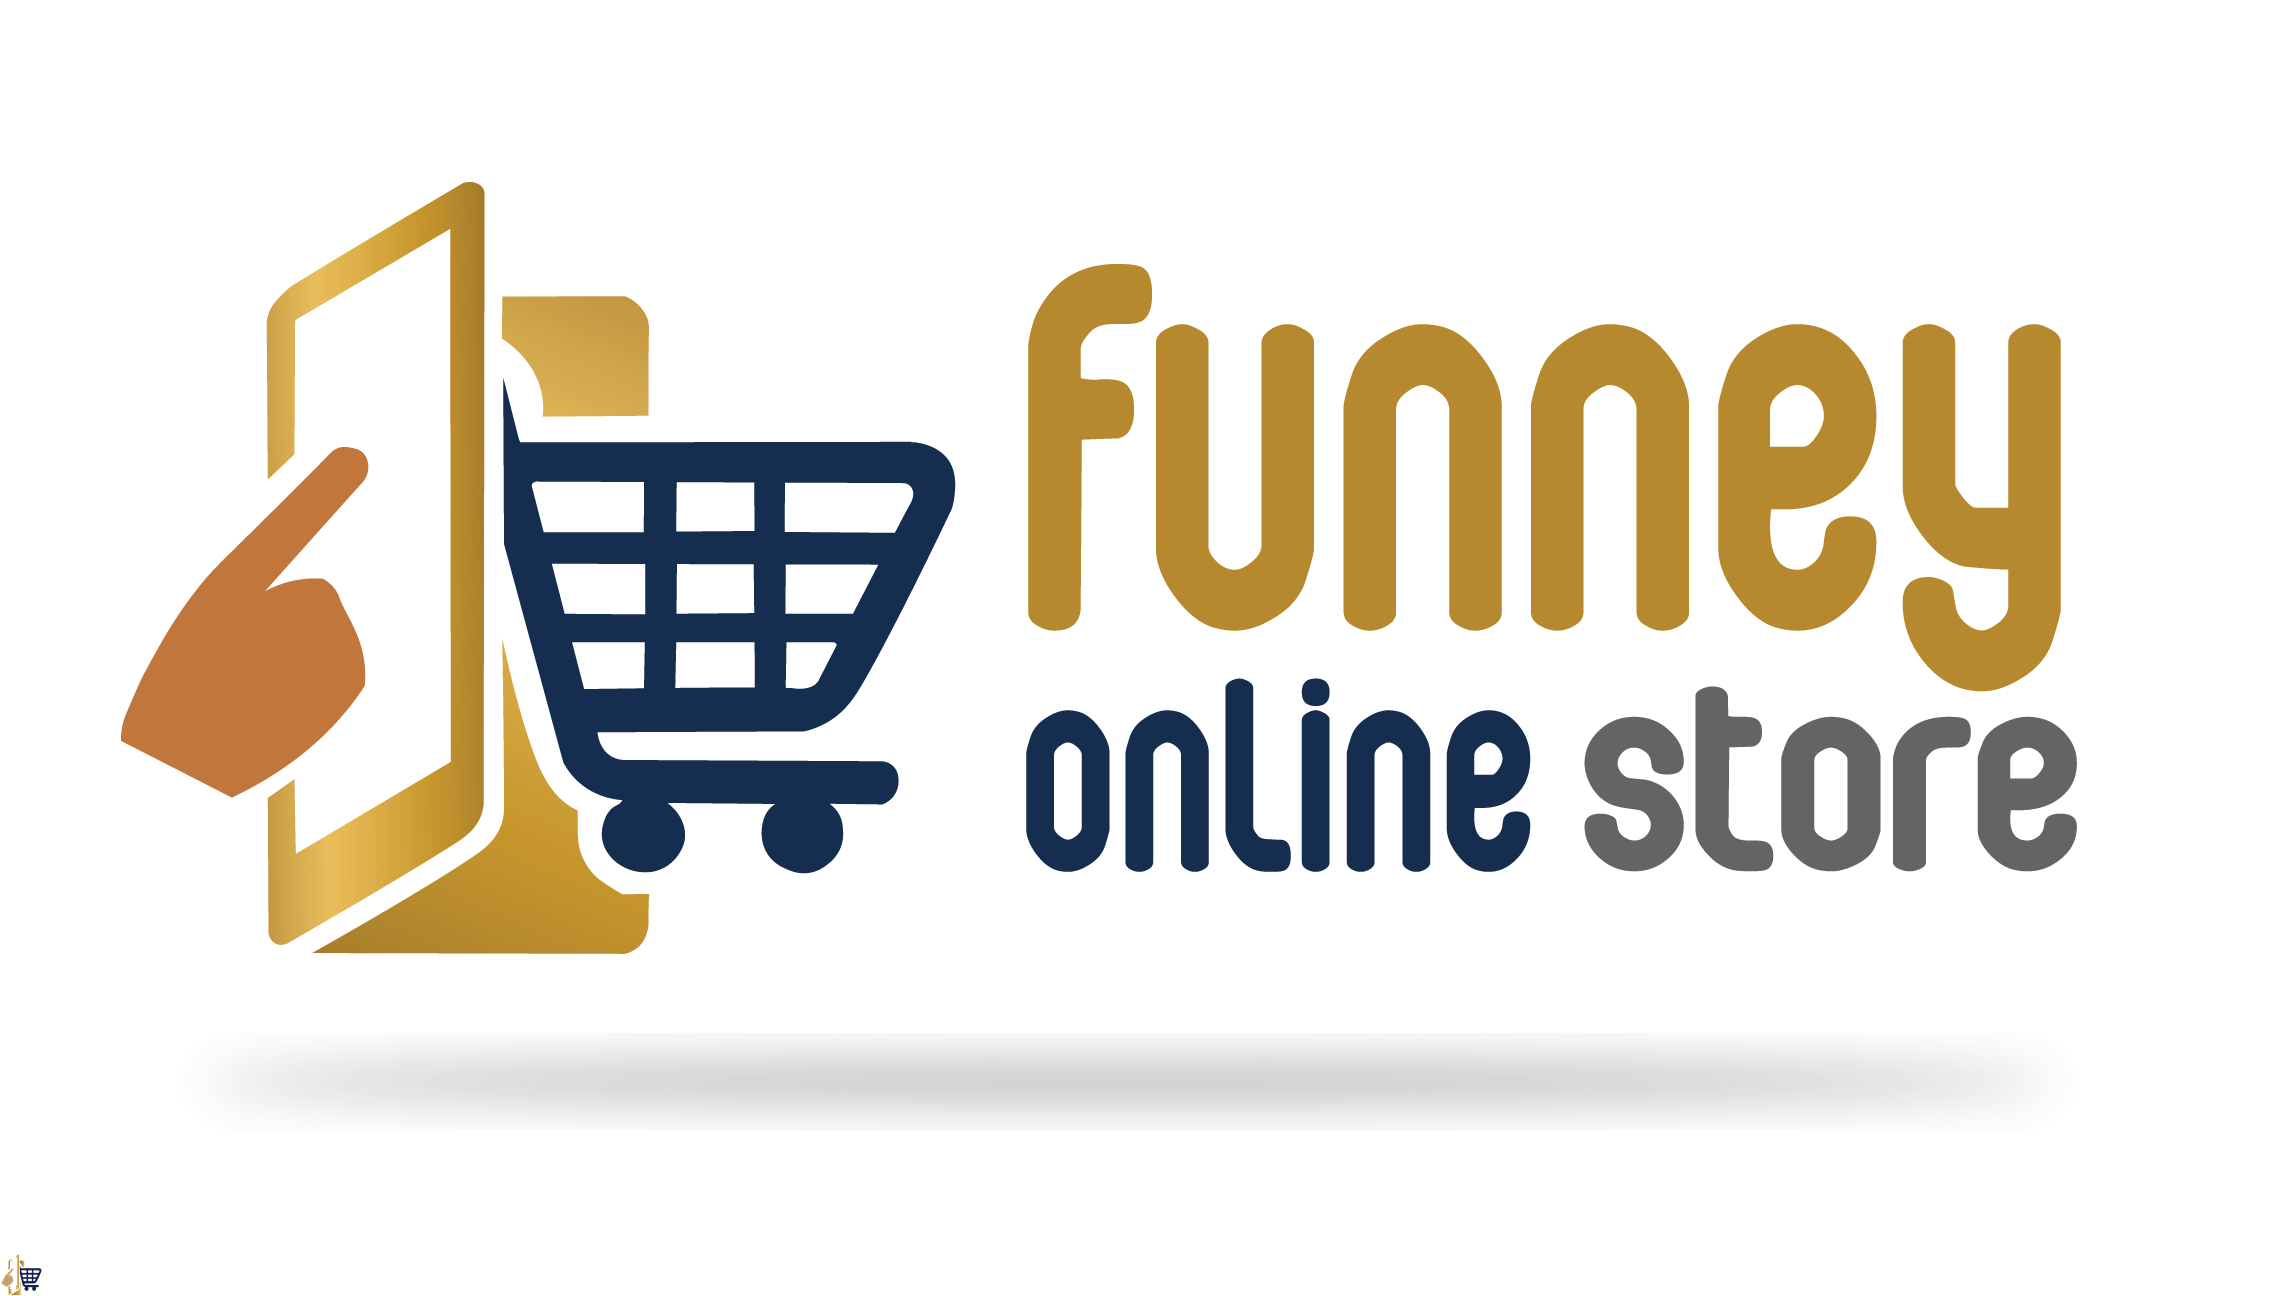 Funney Online Store Ltd